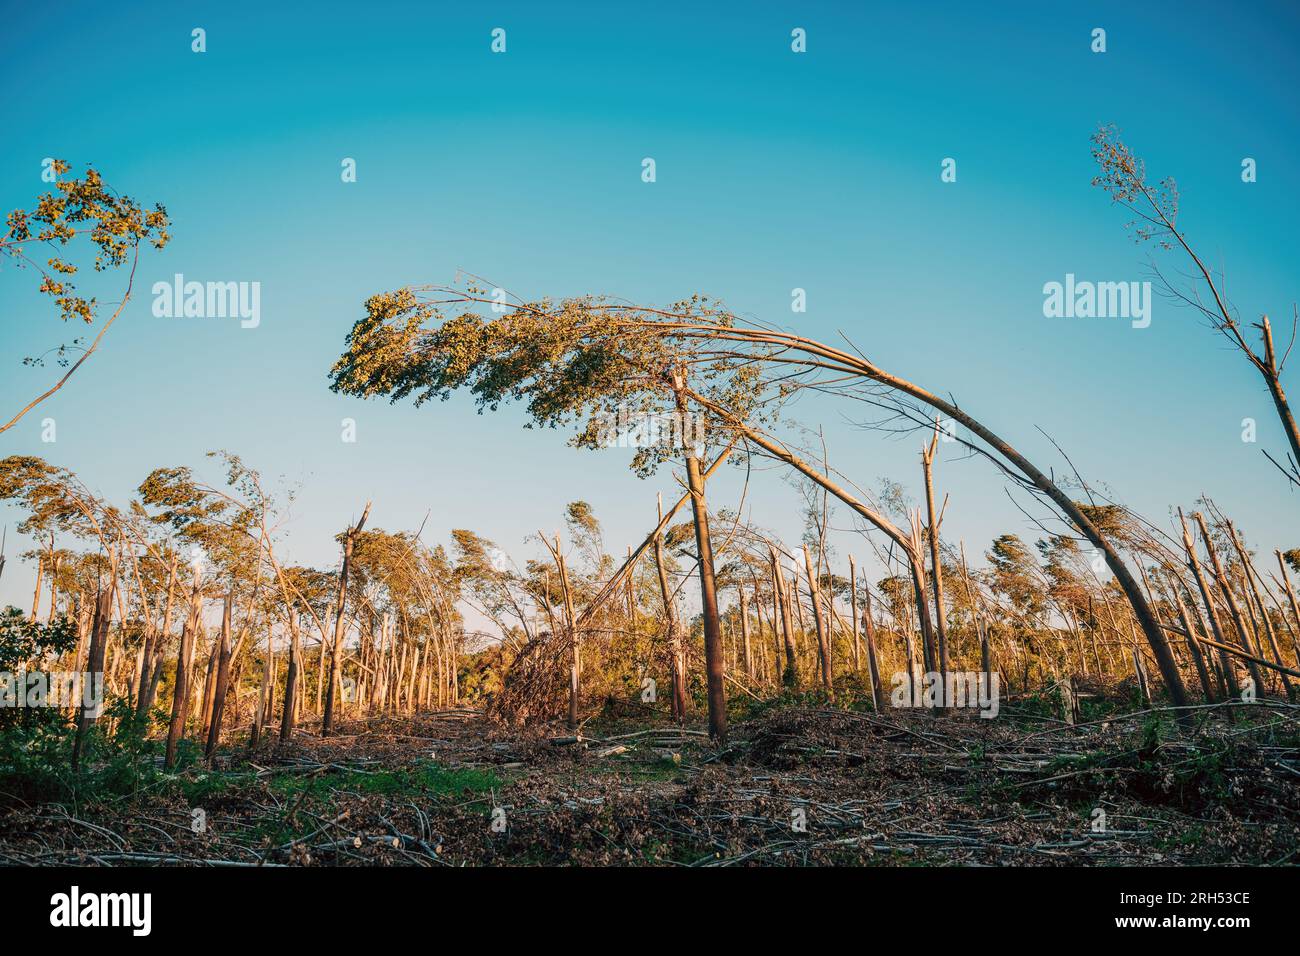 Dommages environnementaux, paysage forestier caduque dévasté après une violente tempête supercellulaire estivale avec vent fort, focalisation sélective Banque D'Images